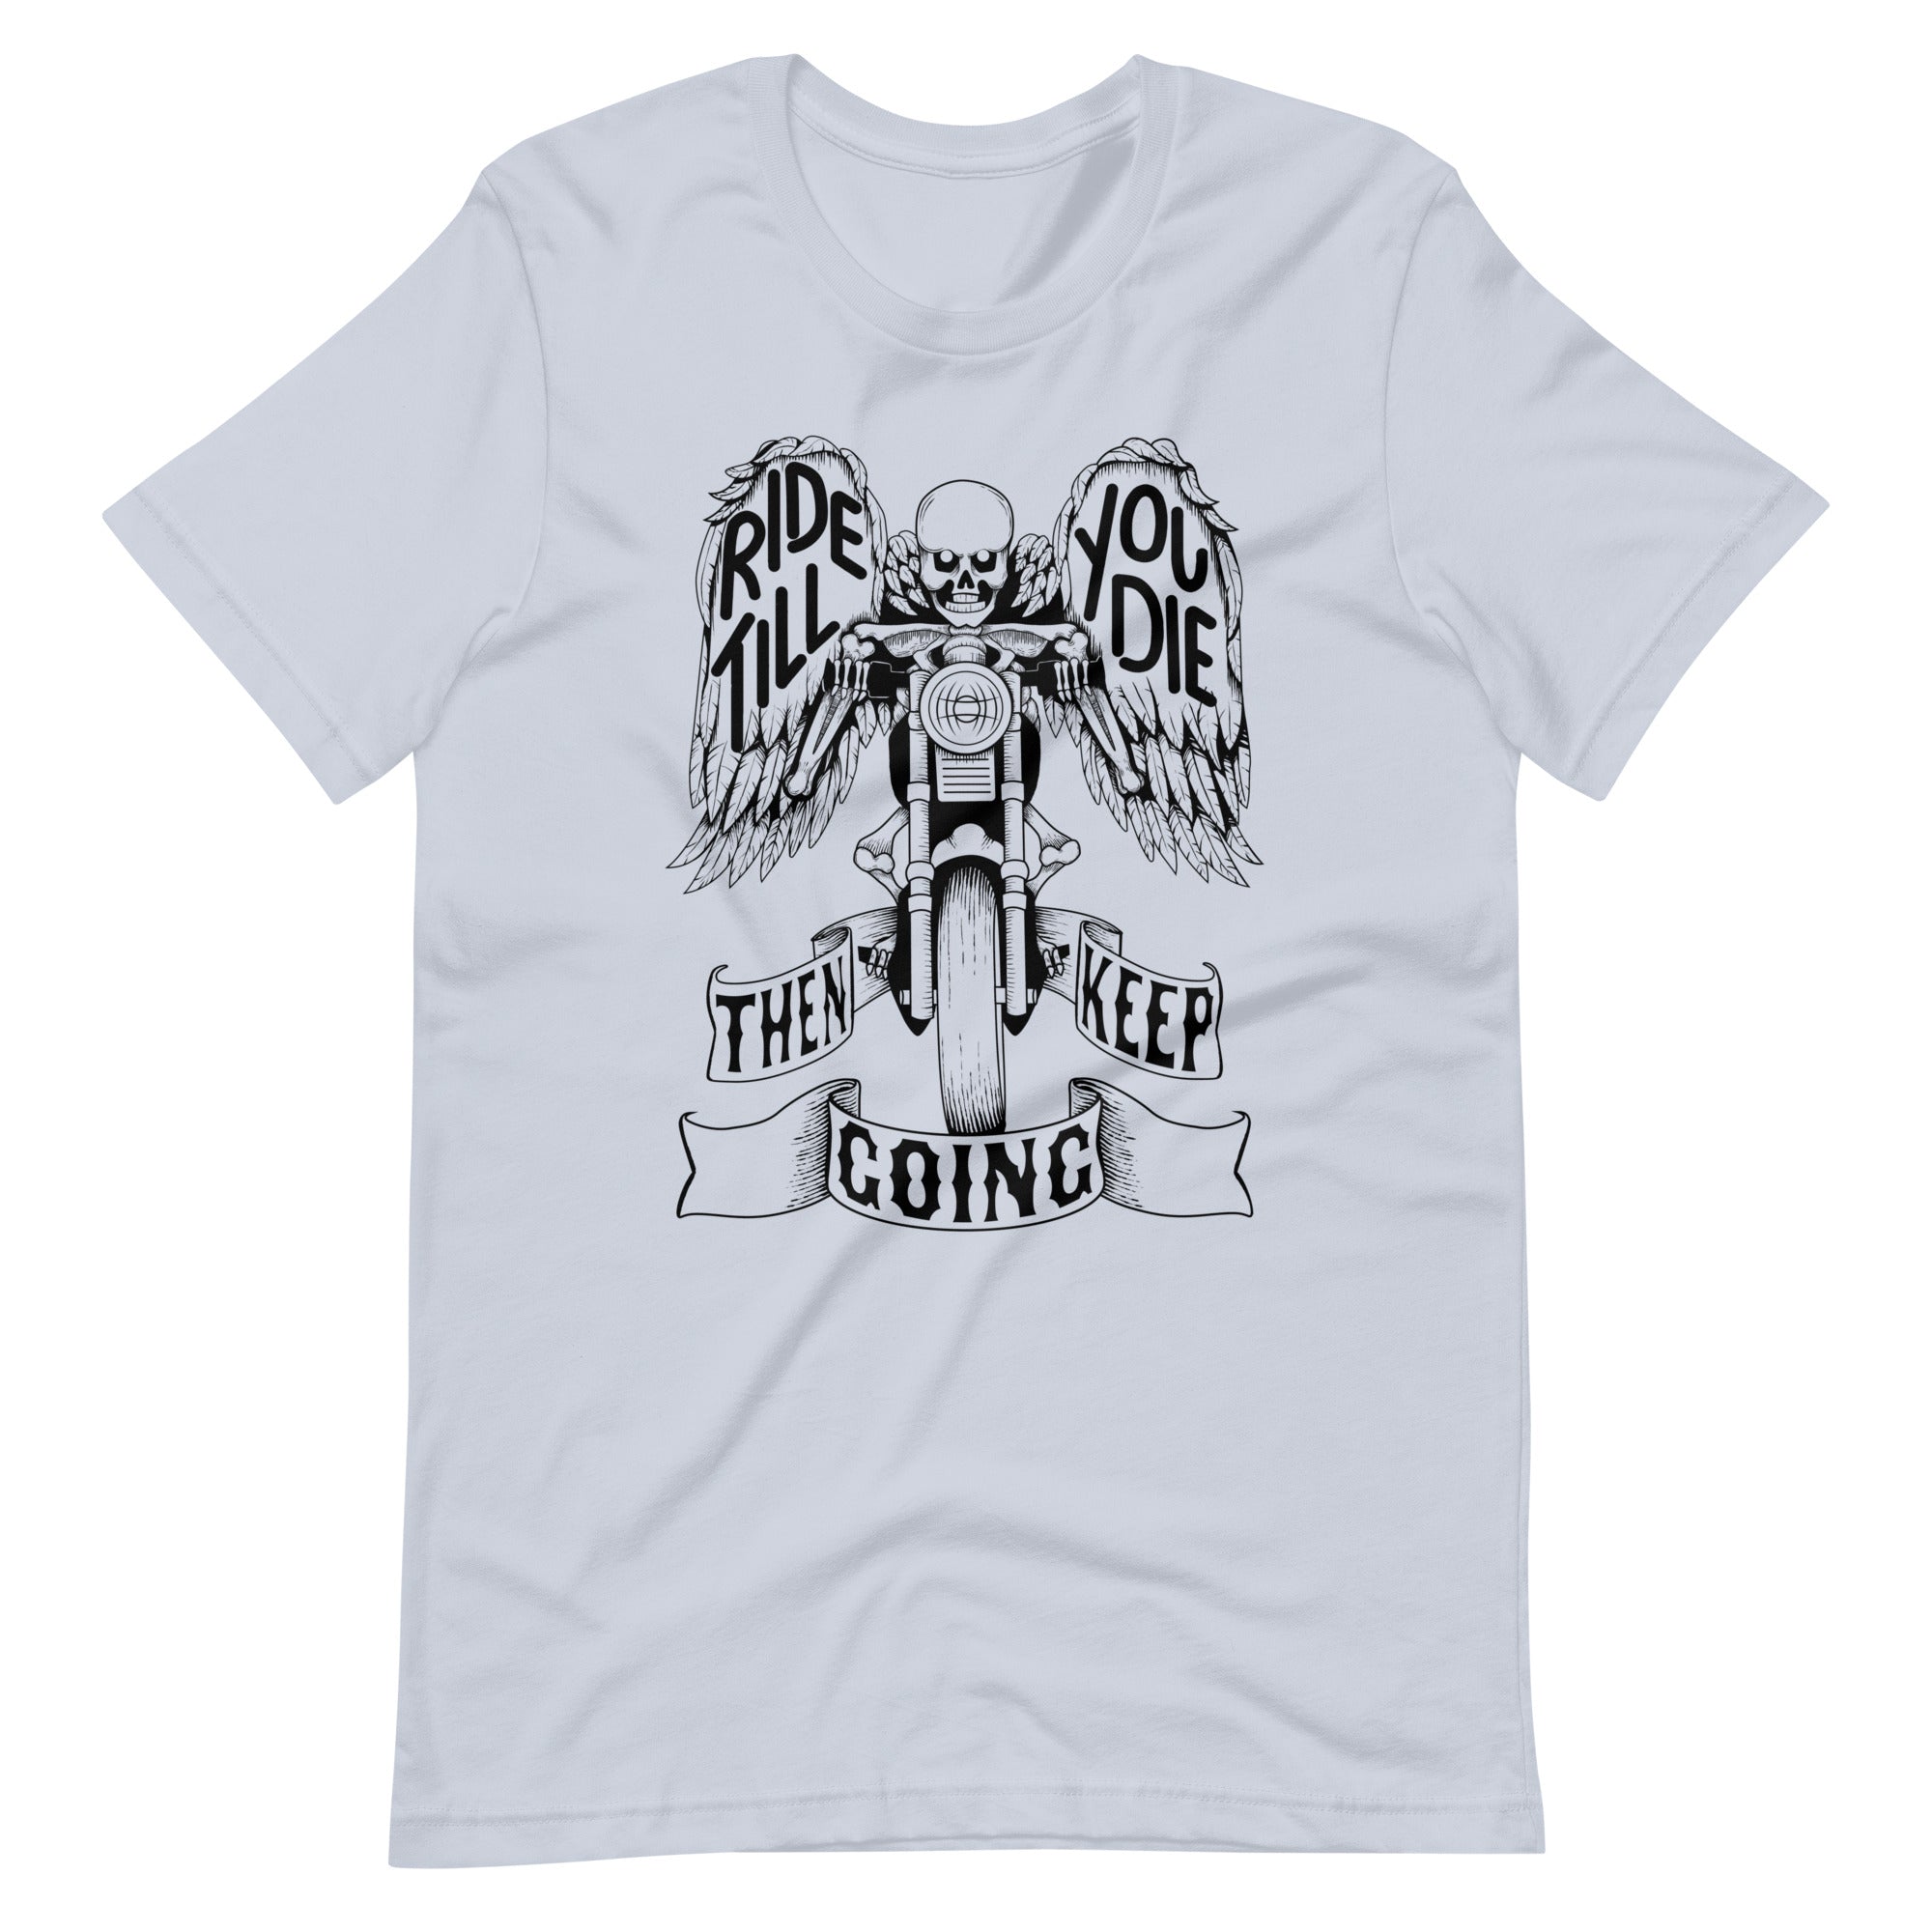 "Ride Till You Die" Tee Shirt